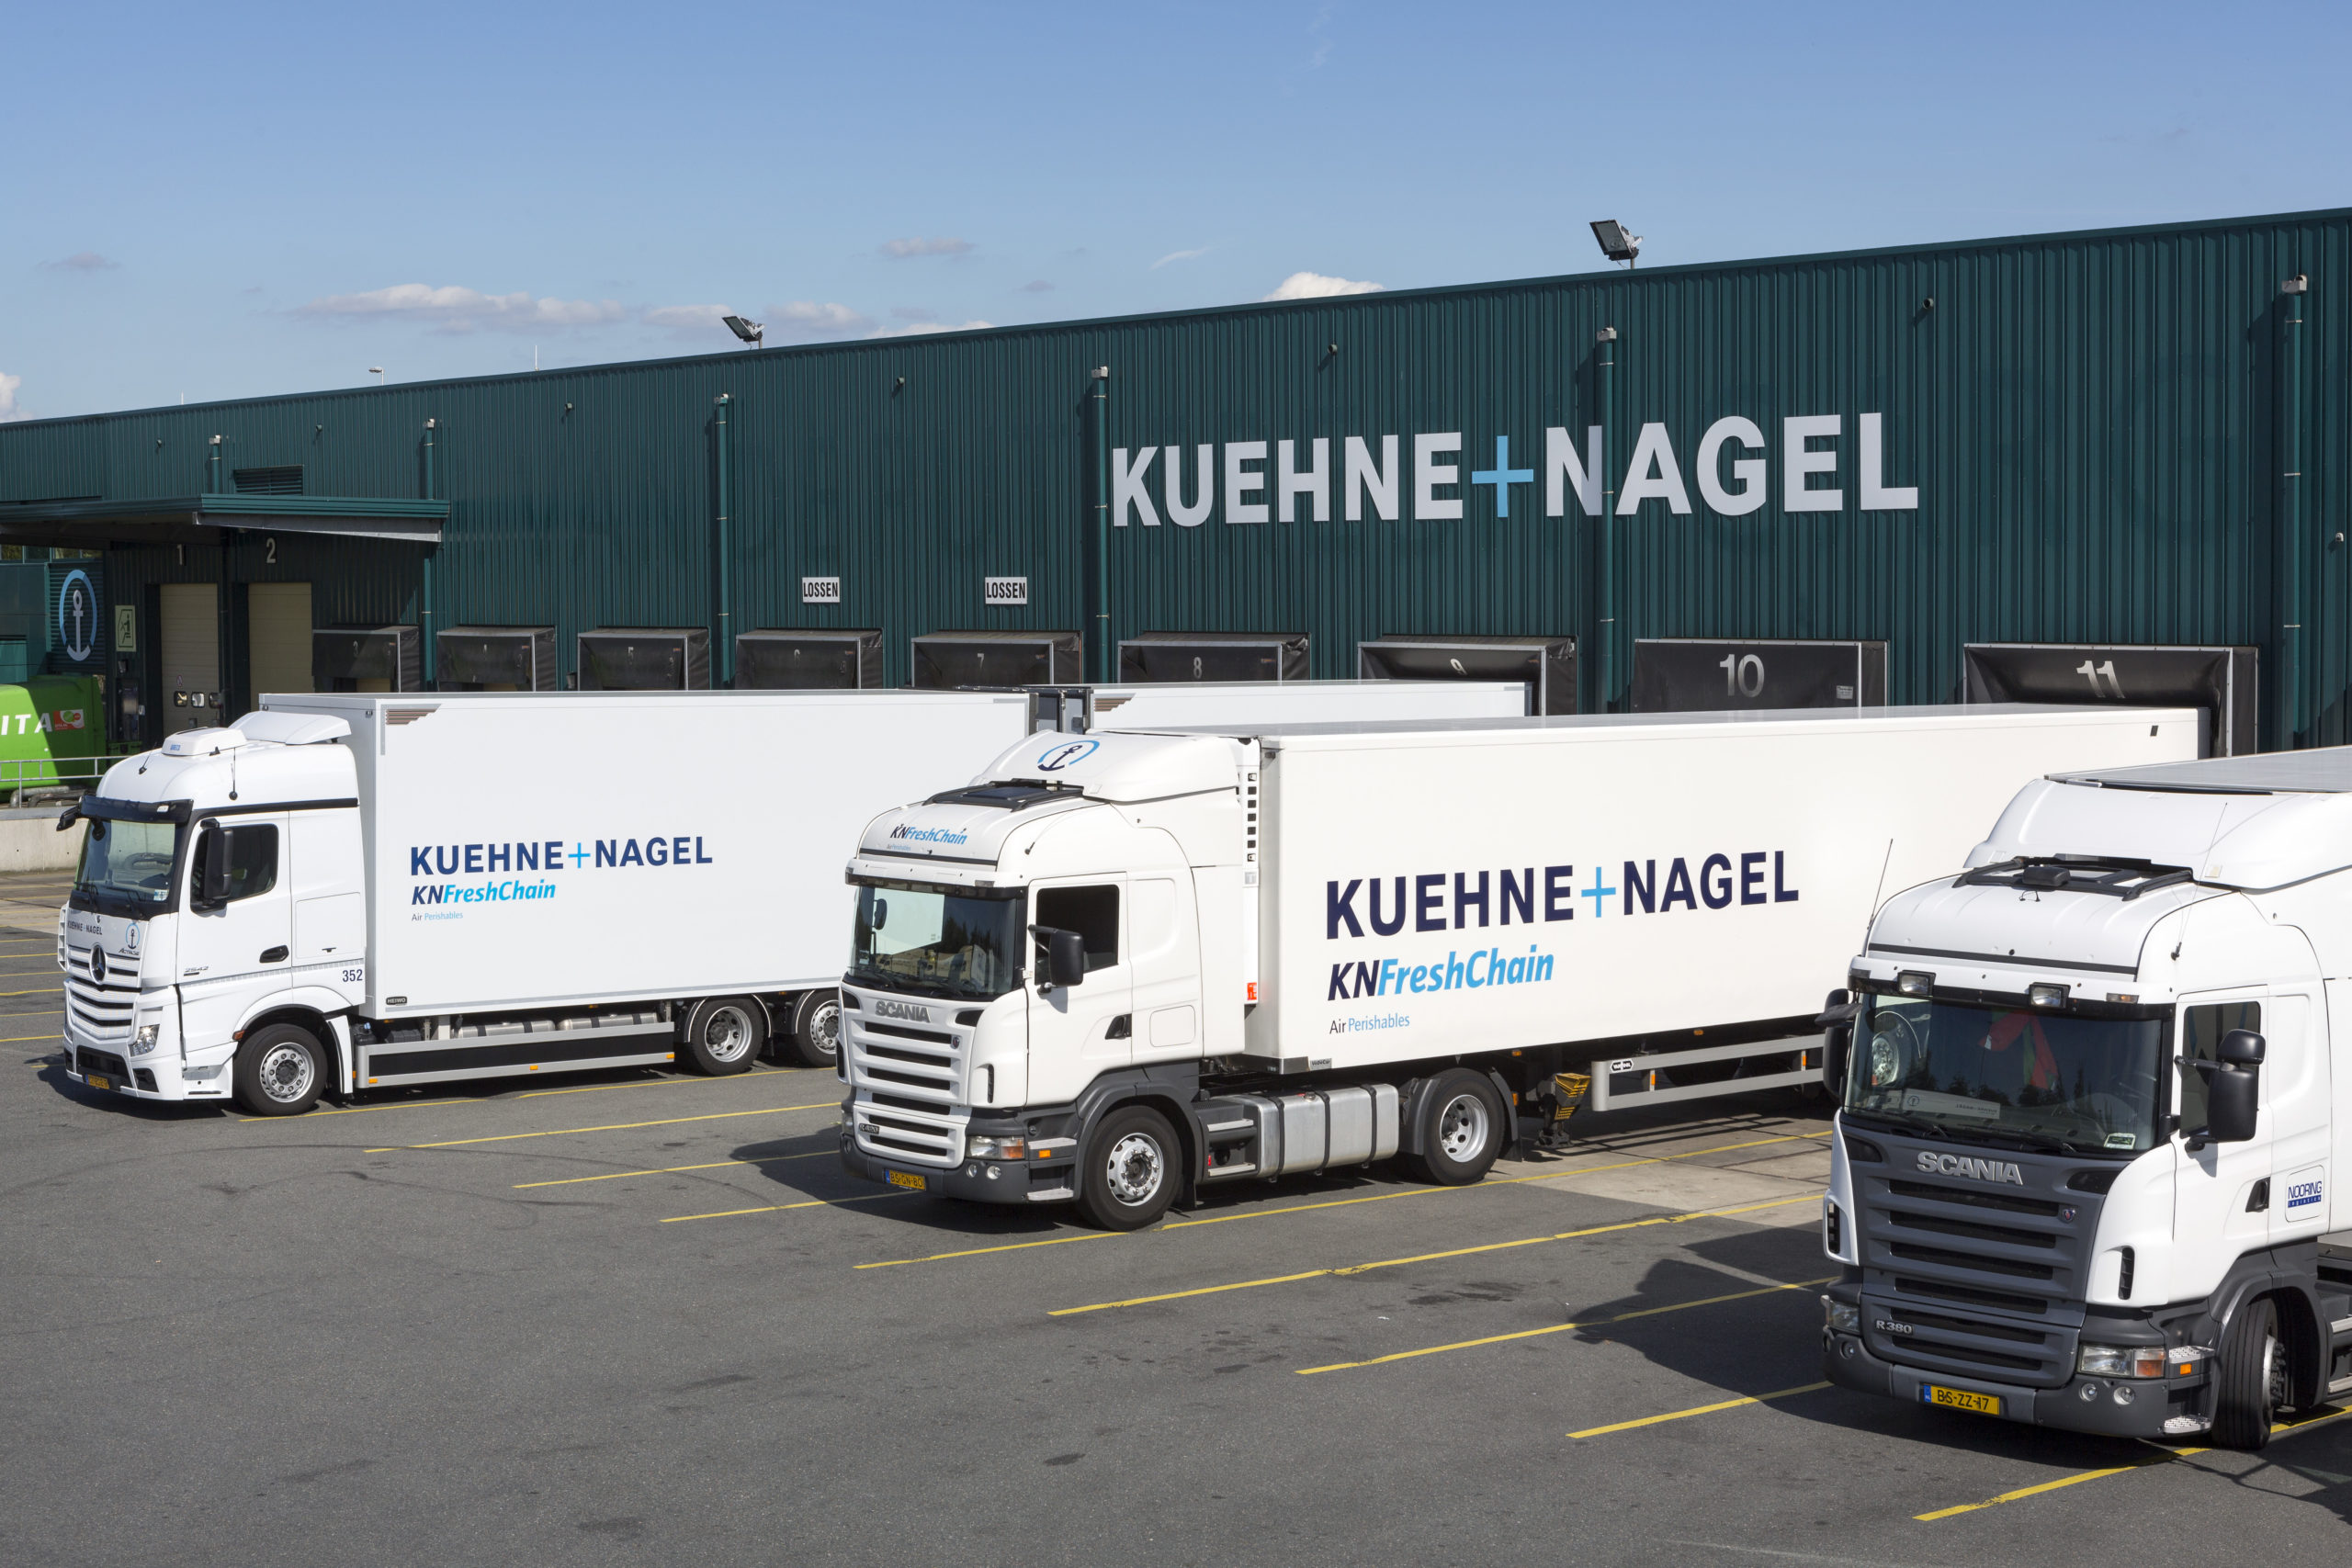 Moderna-Impfstoff: Kühne + Nagel erhält Logistik-Auftrag